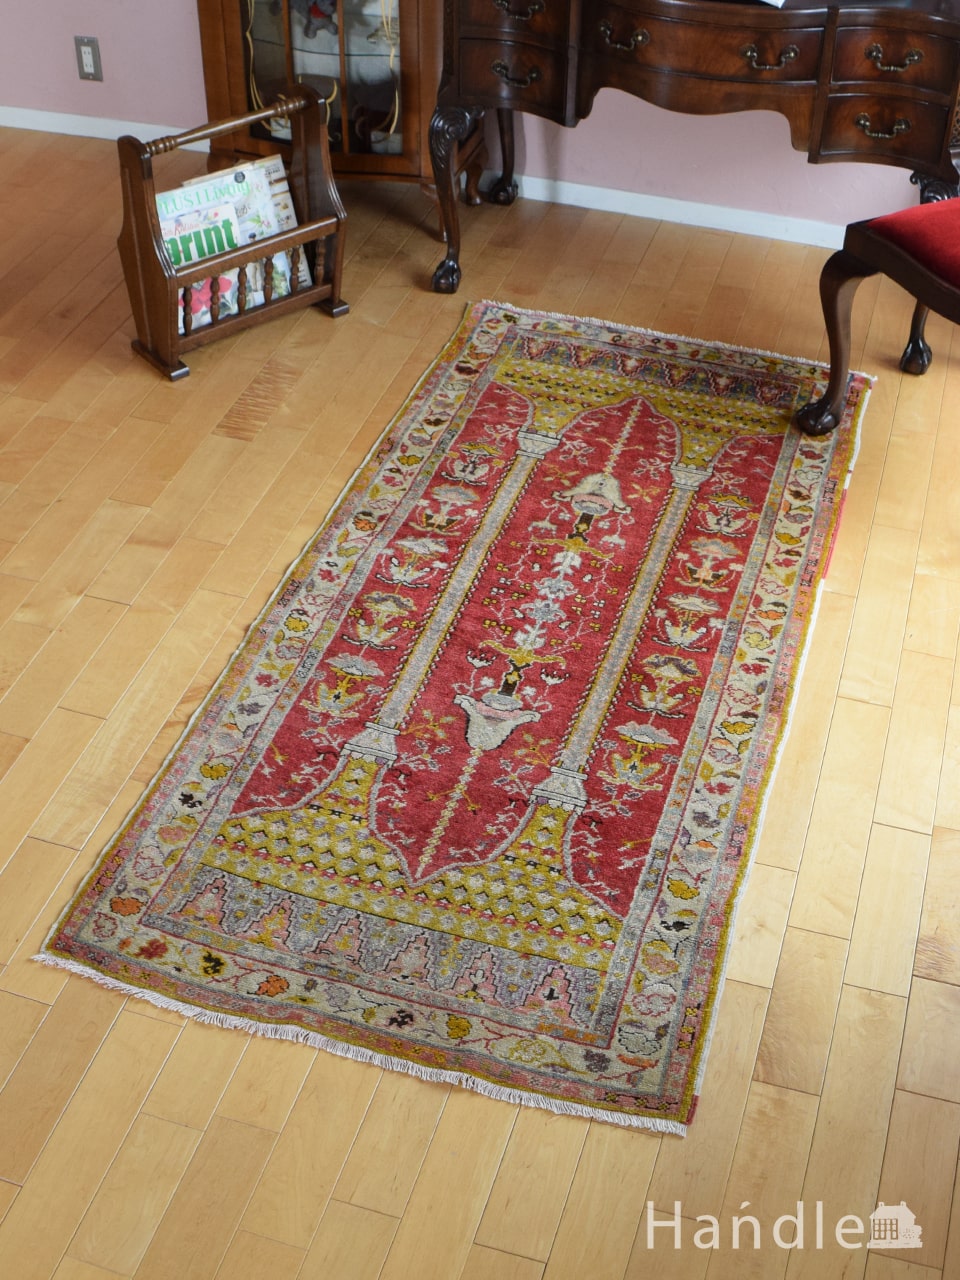 ビンテージのおしゃれな絨毯、ランプの模様が華やかに描かれたアナトリアのトライバルラグ (m-6406-z)